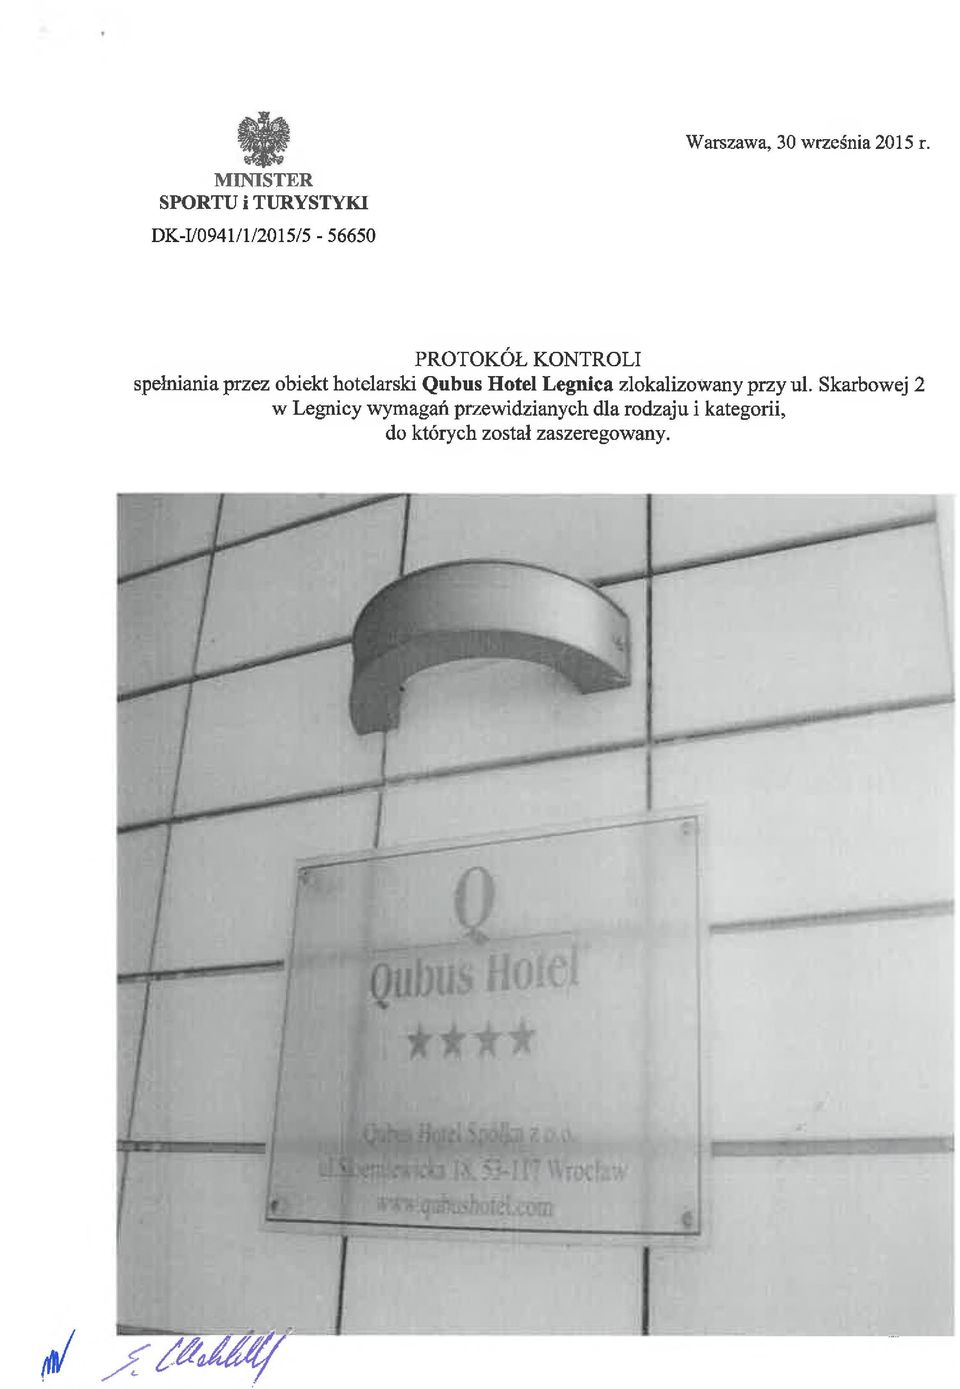 PROTOKÓŁ KONTROLI spełniania przez obiekt hotelarski Qubus Hotel